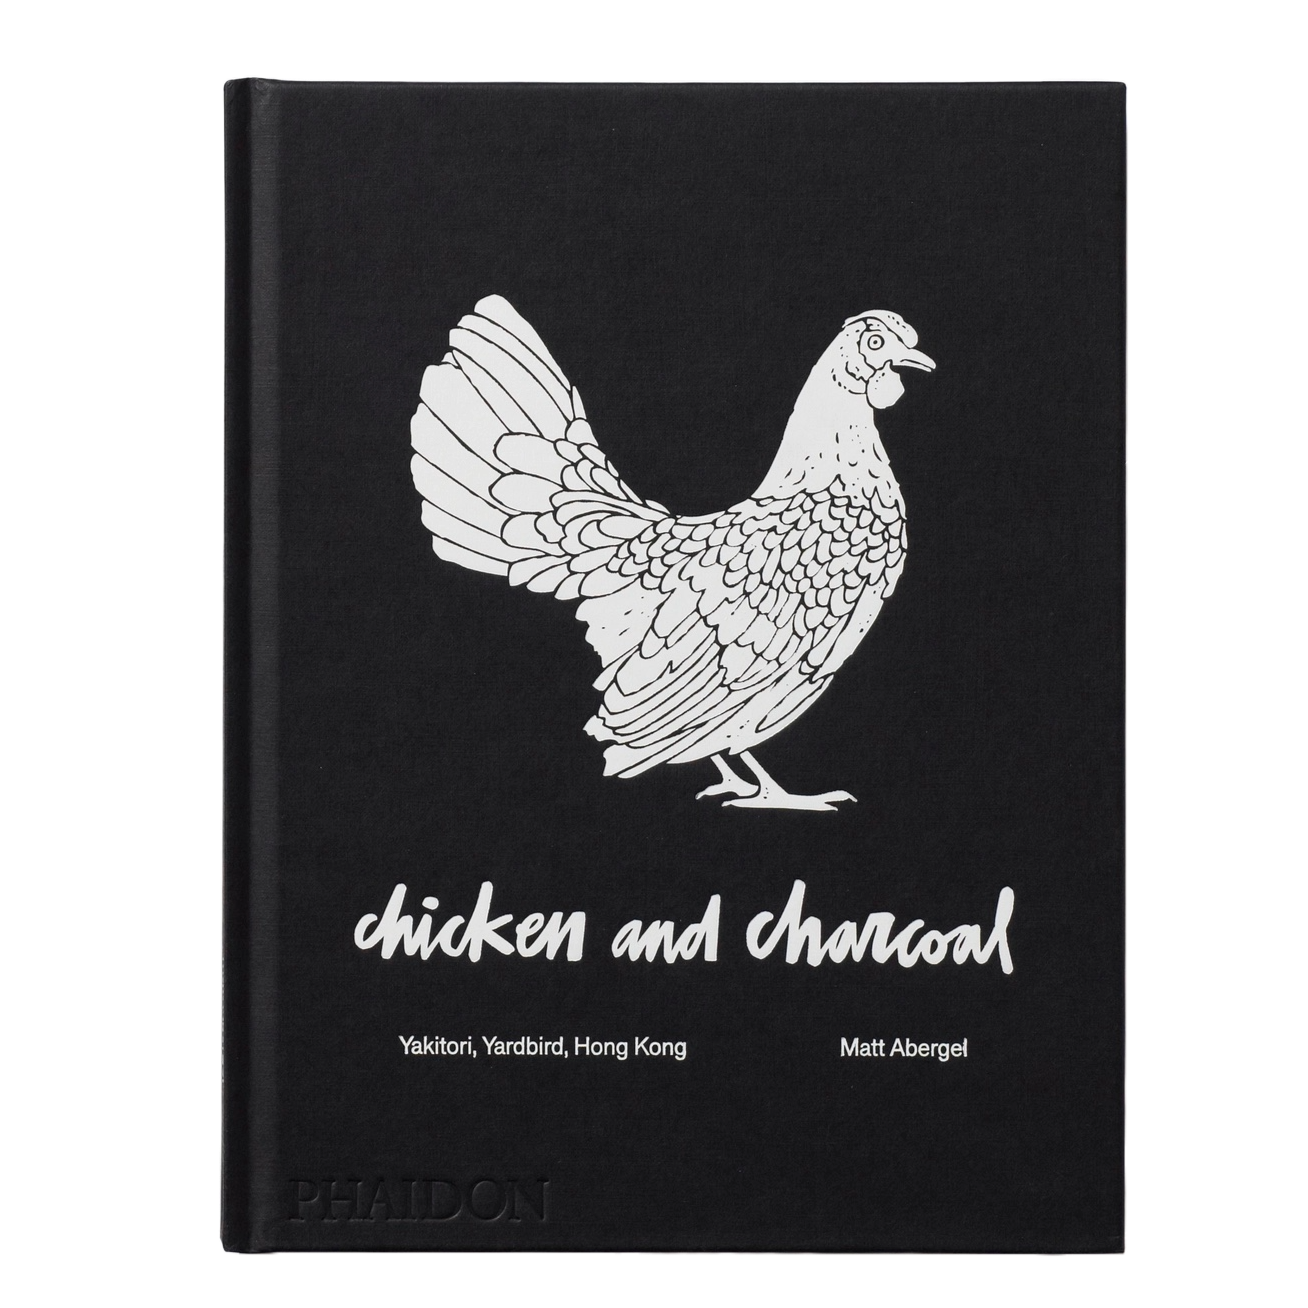 Chicken & Charcoal: Yakitori, Yardbird, Hong Kong